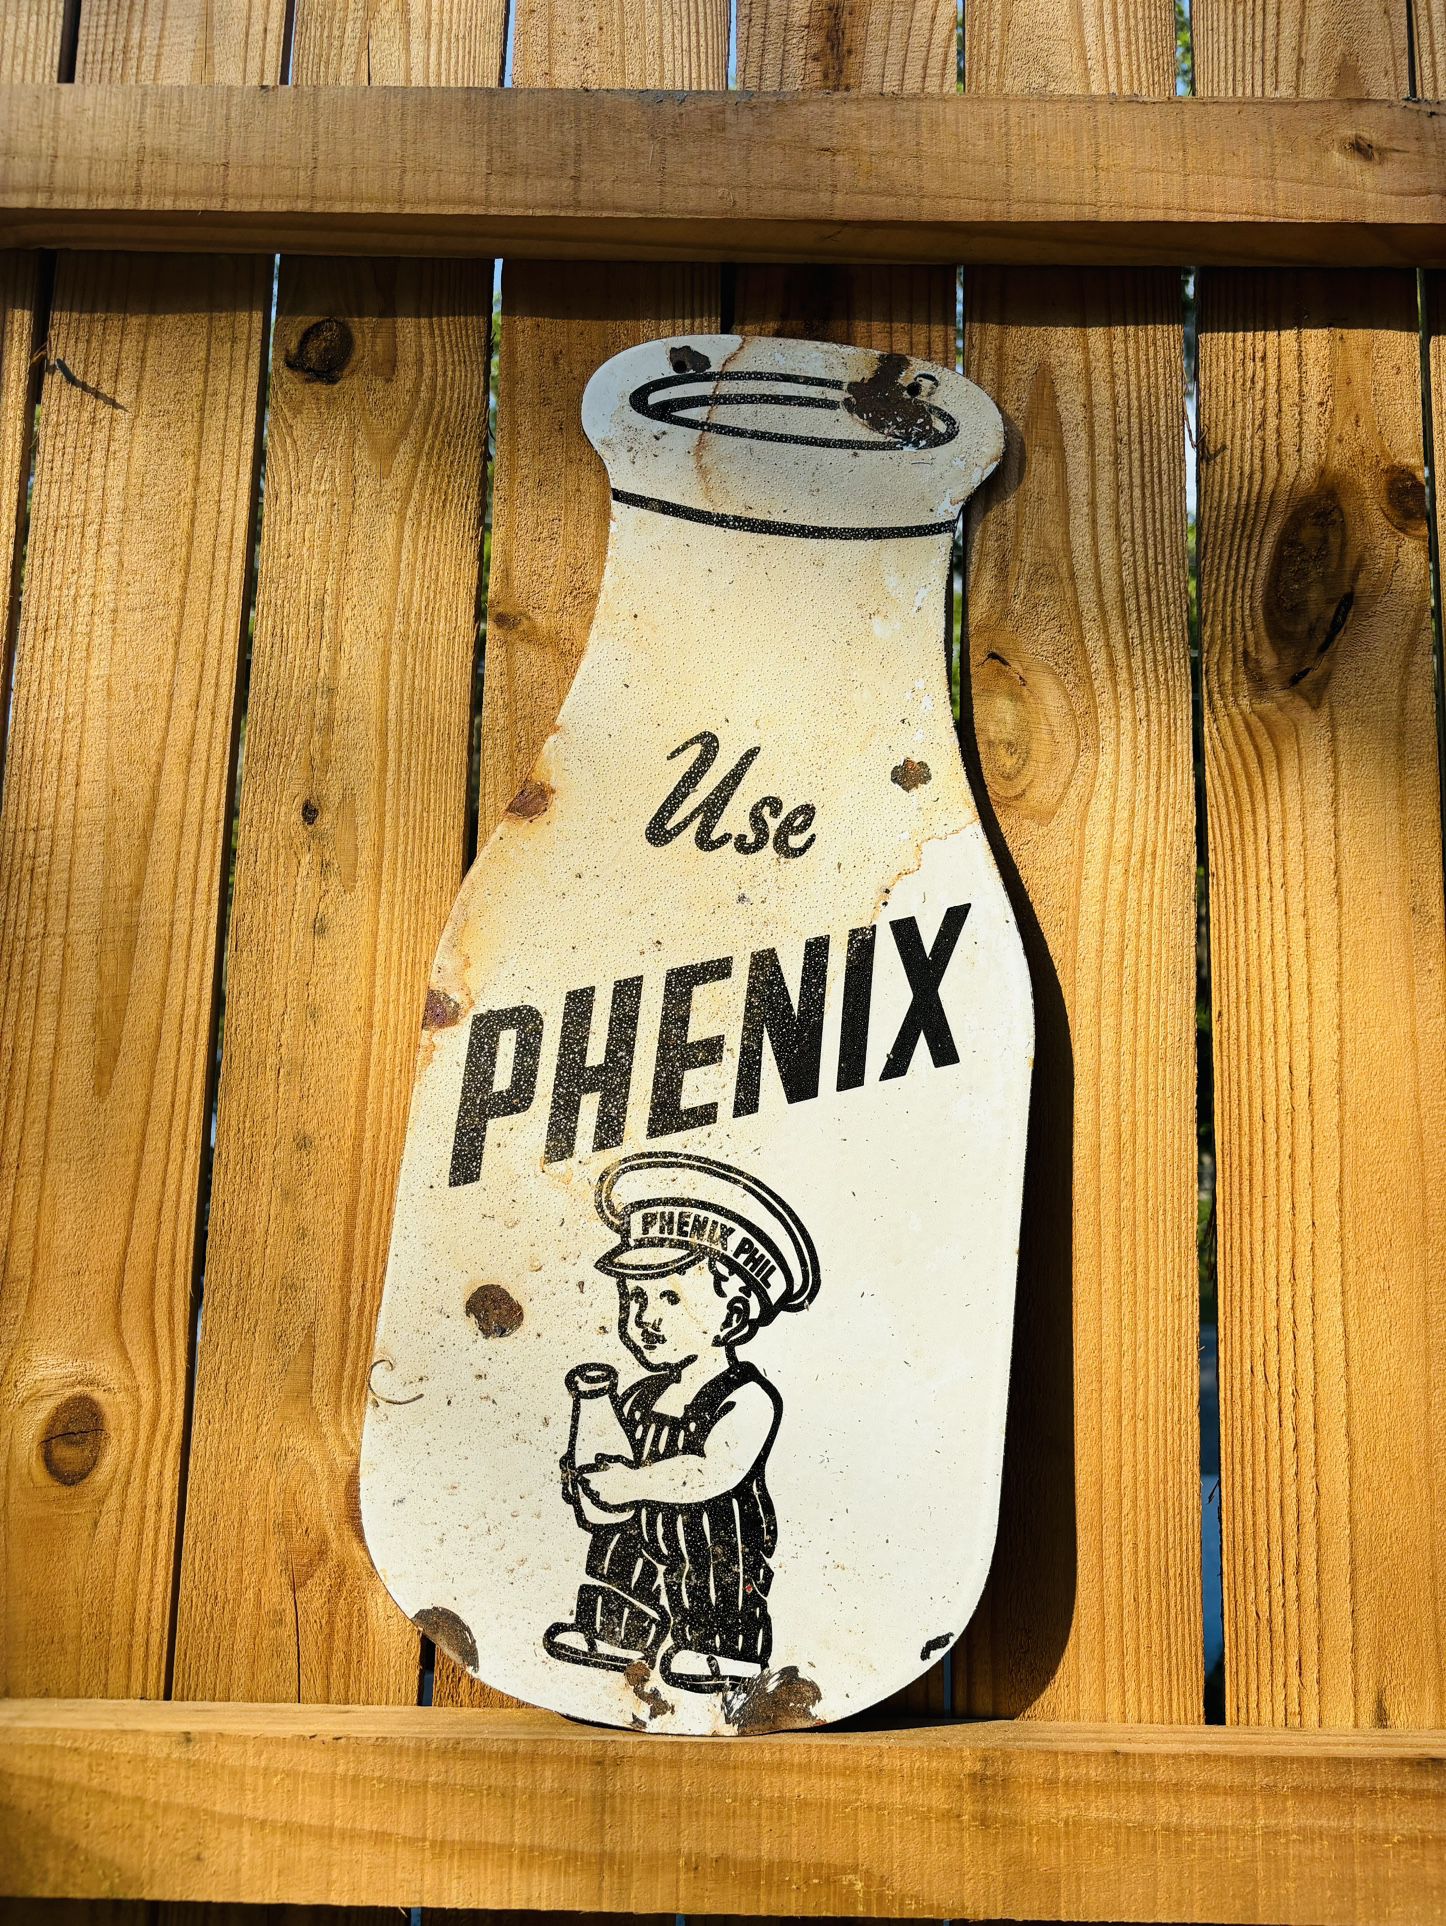 Porcelain Phenix Milk Advertising Sign 